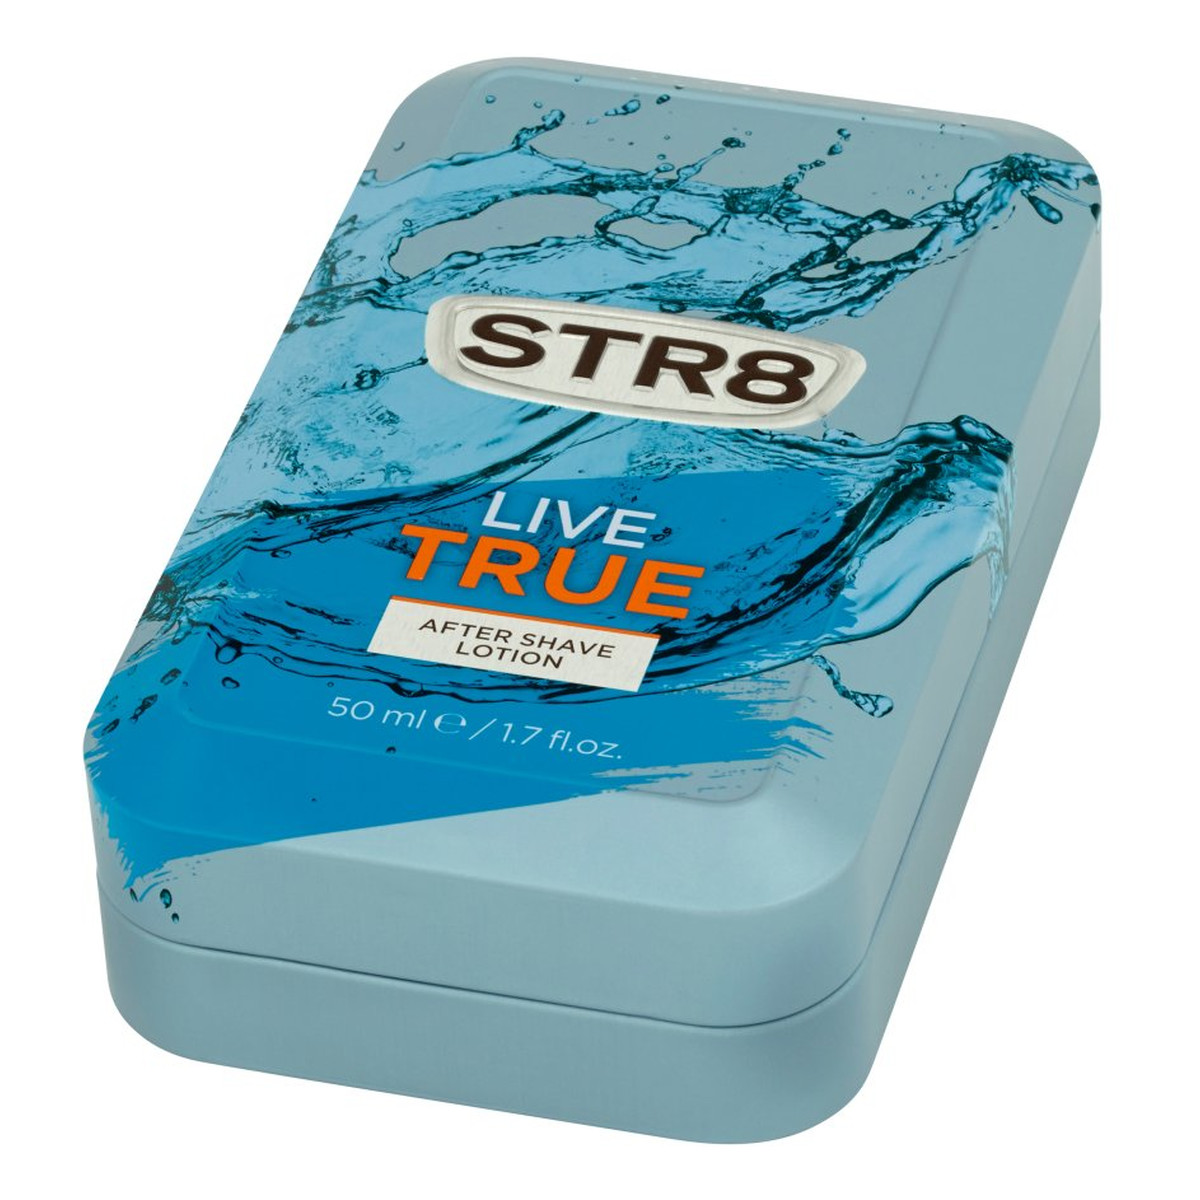 STR8 Live True woda Po Goleniu 50ml